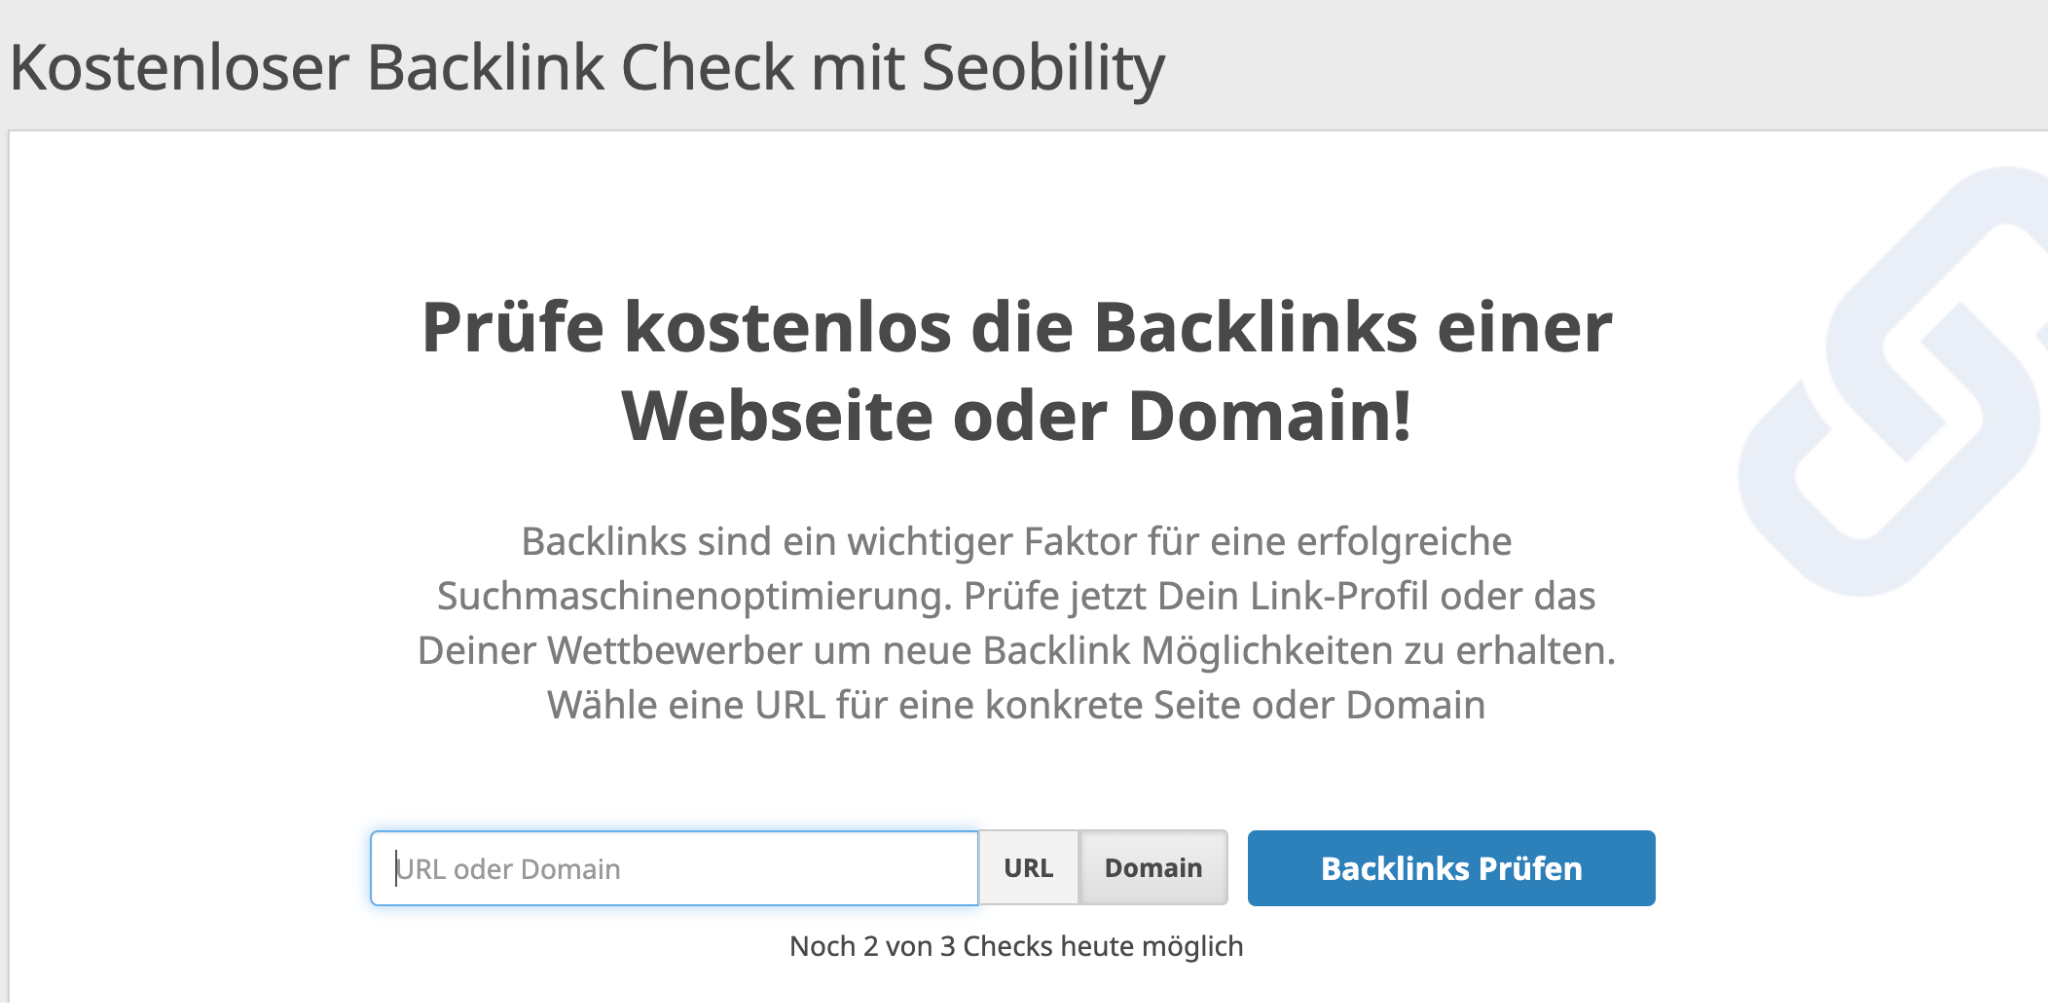 der Backlink Check von Seobility